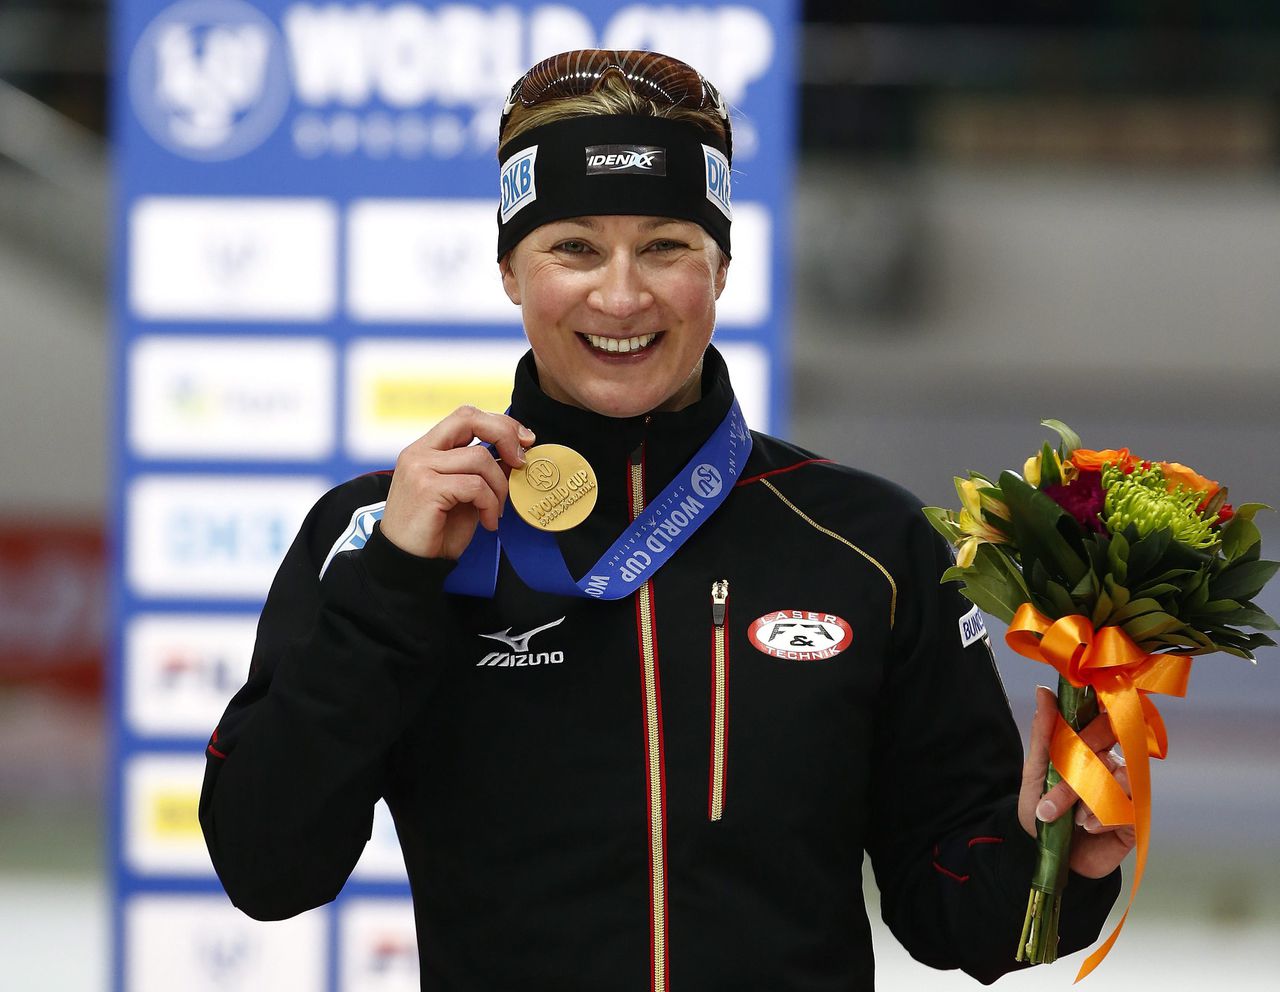 Claudia Pechstein toont haar gouden medaille voor de 5 kilometer tijdens de World Cup in Seoul, 2014. EPA/JEON HEON-KYUN